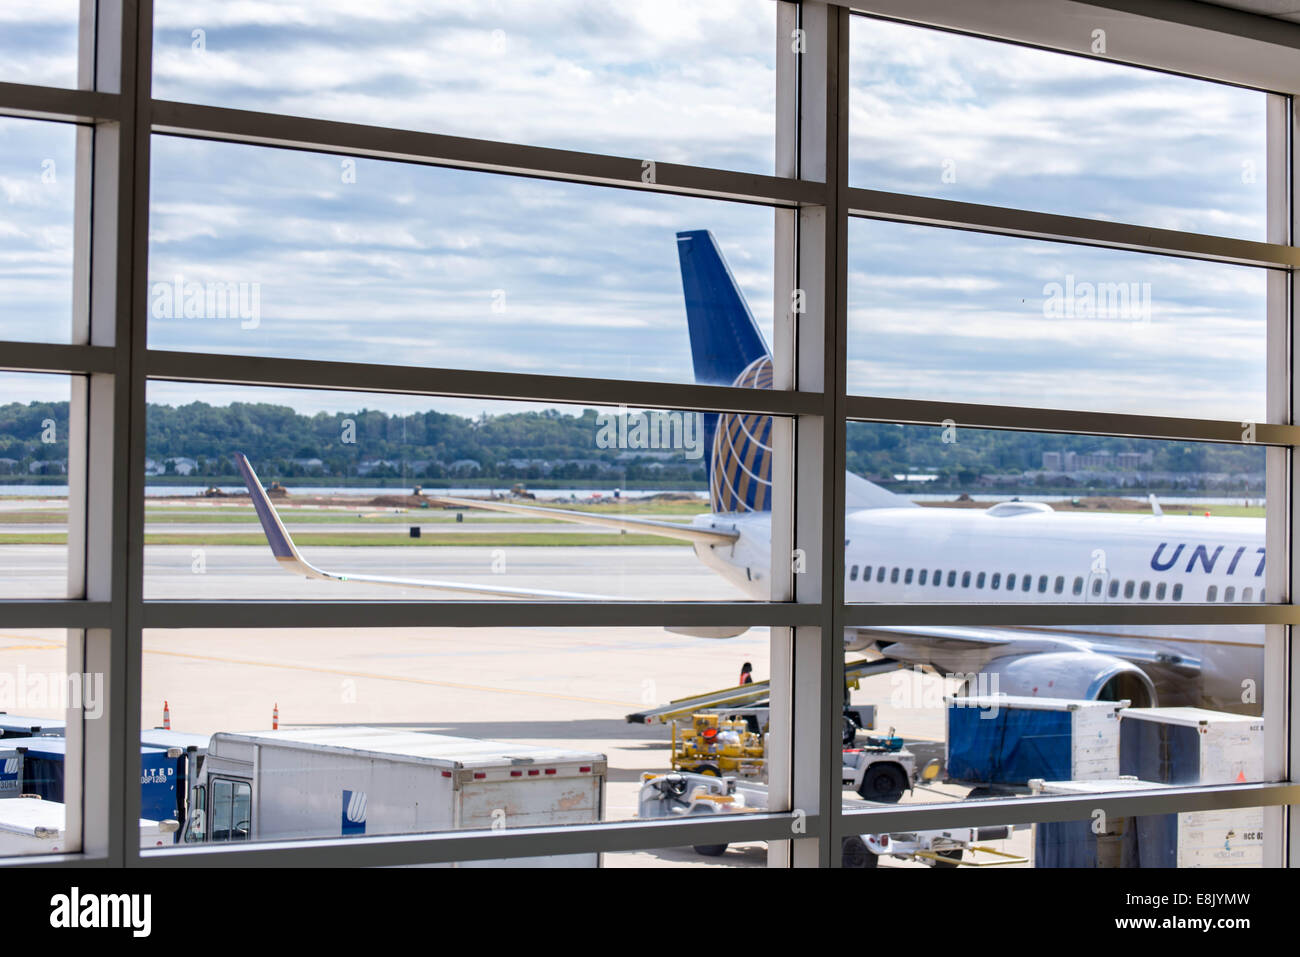 Le DCA, l'Aéroport National Reagan, Washington, DC - voir l'aéroport hors fenêtre pour les avions et les opérations de la rampe Banque D'Images